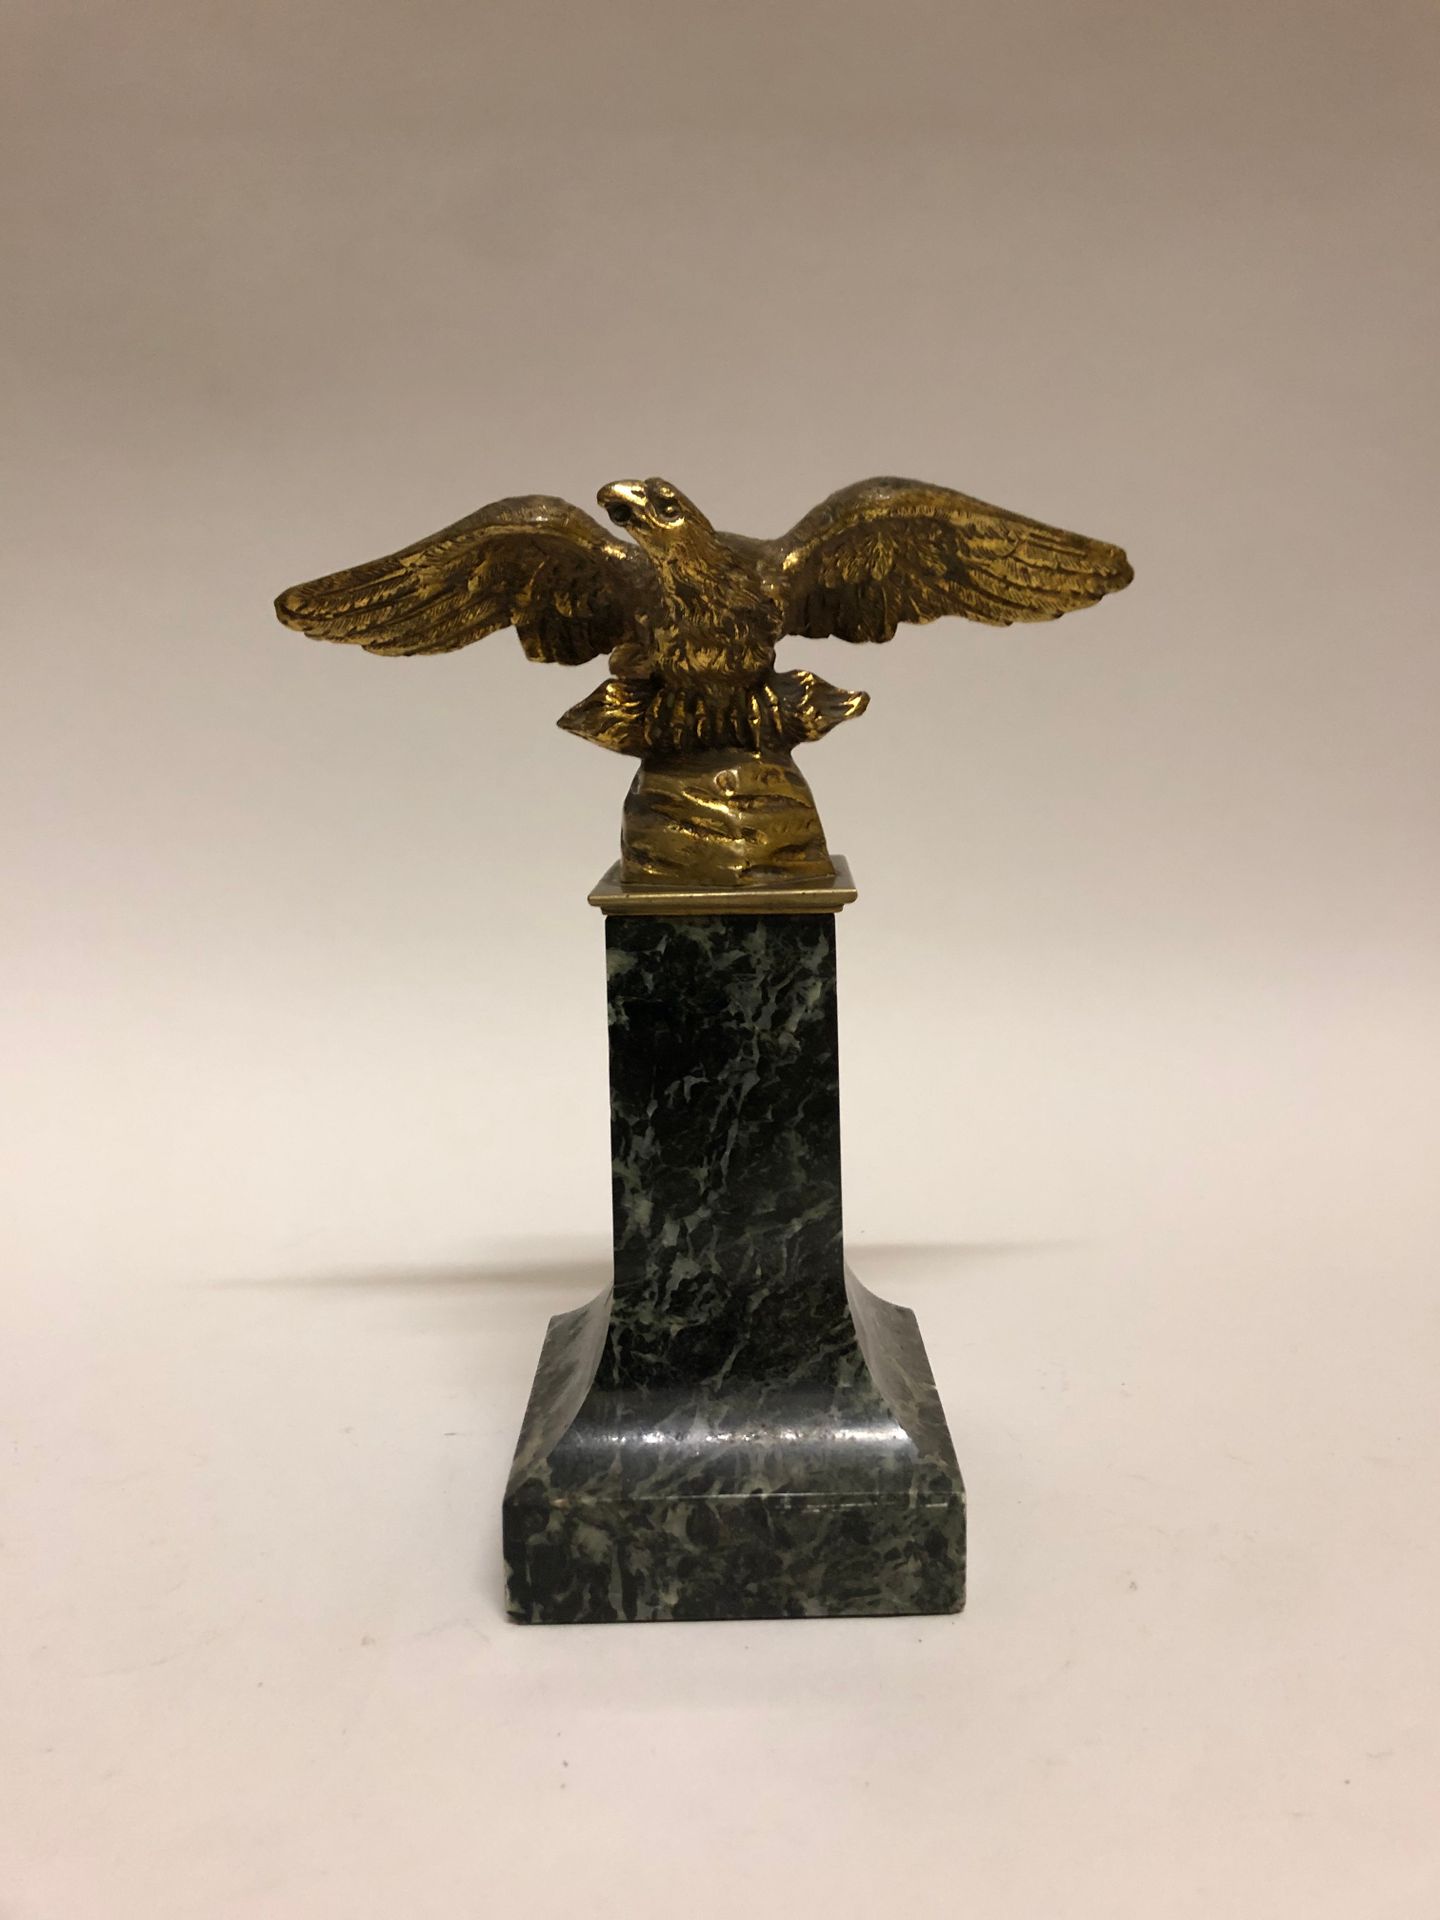 Null Un'aquila di bronzo dorato su una base di marmo verde. Altezza: 18 cm.